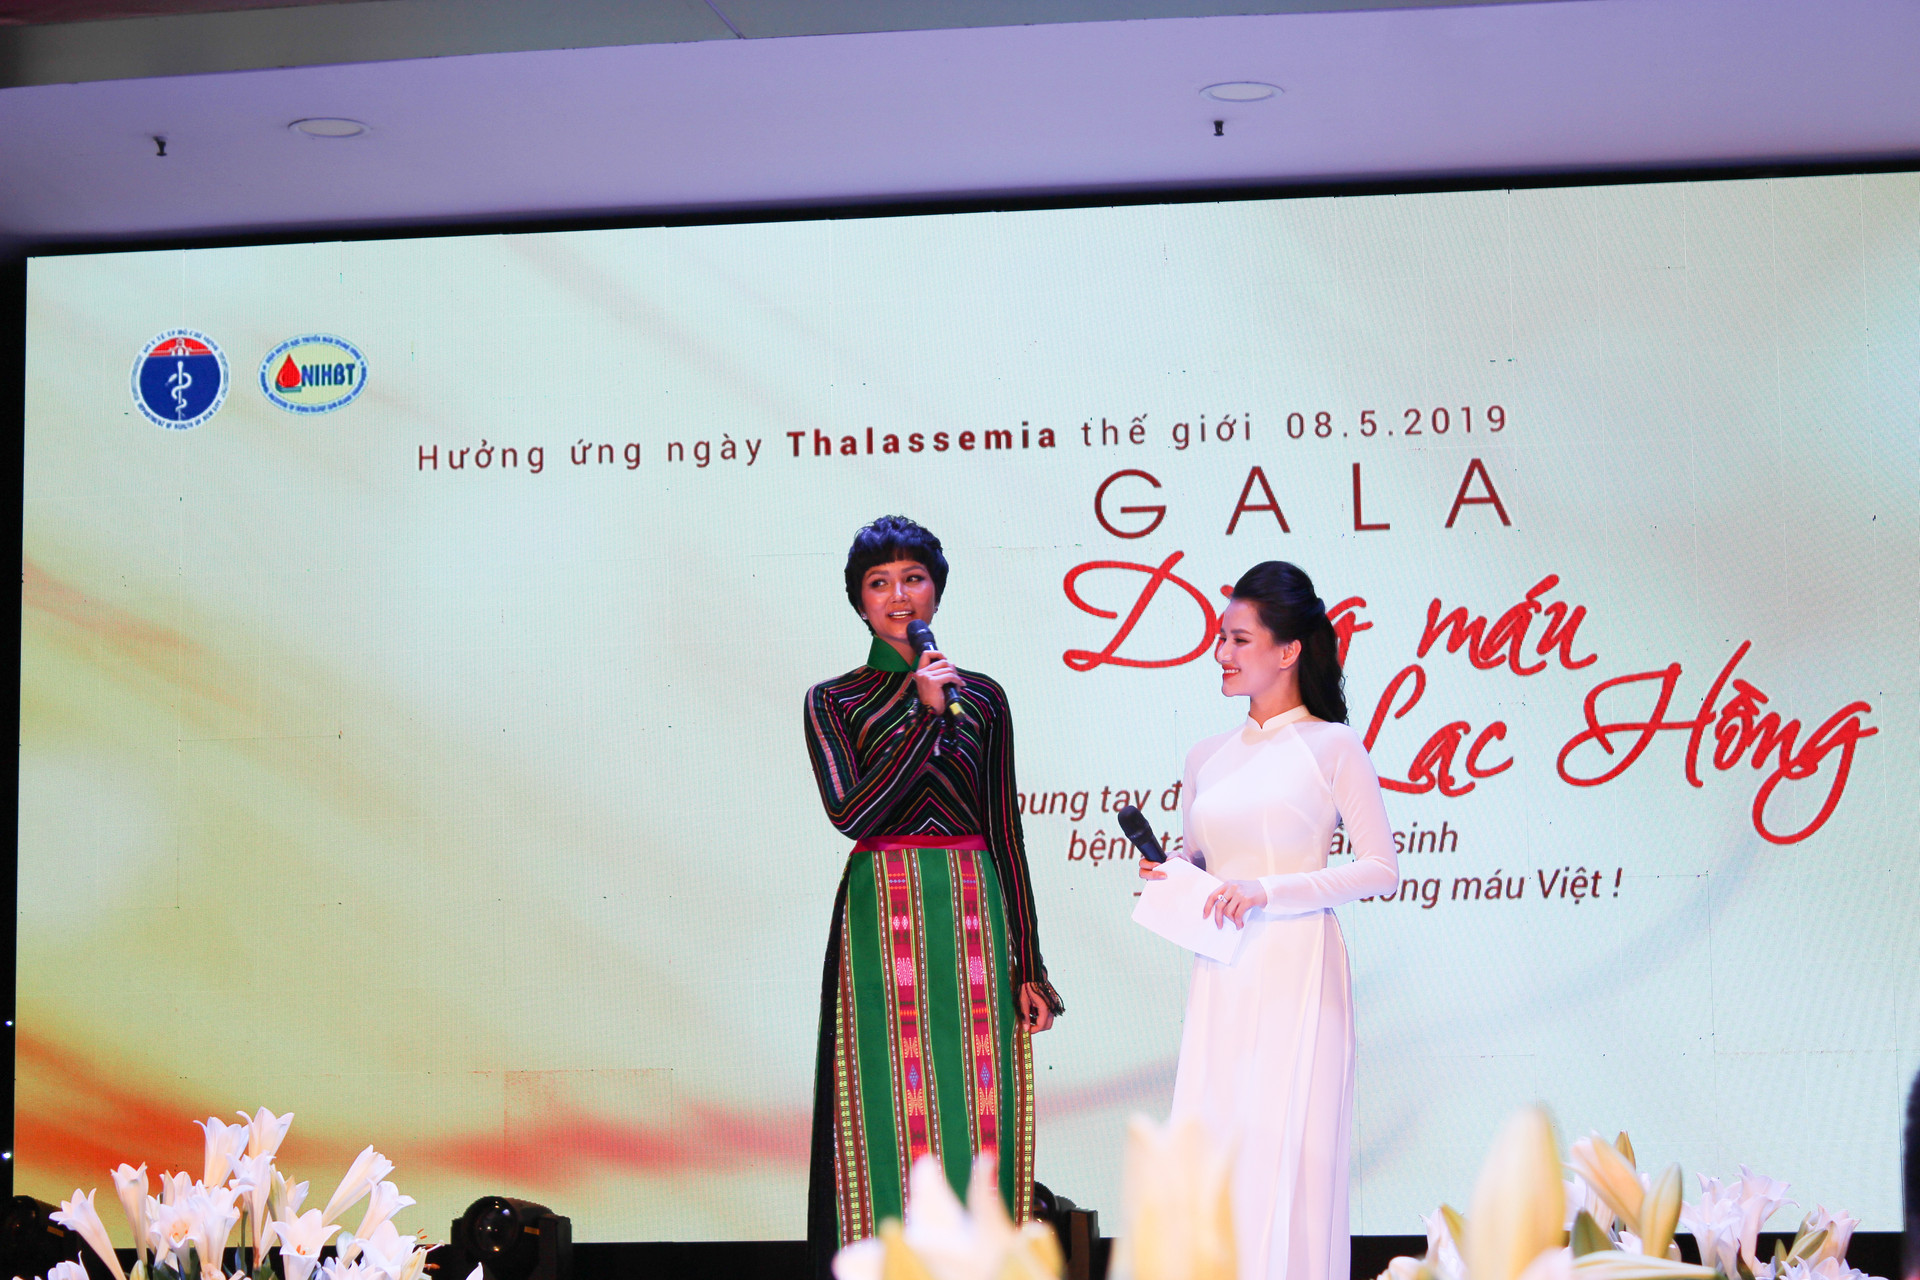 Hoa hậu H’Hen Niê kêu gọi xét nghiệm Thalassemia tiền hôn nhân